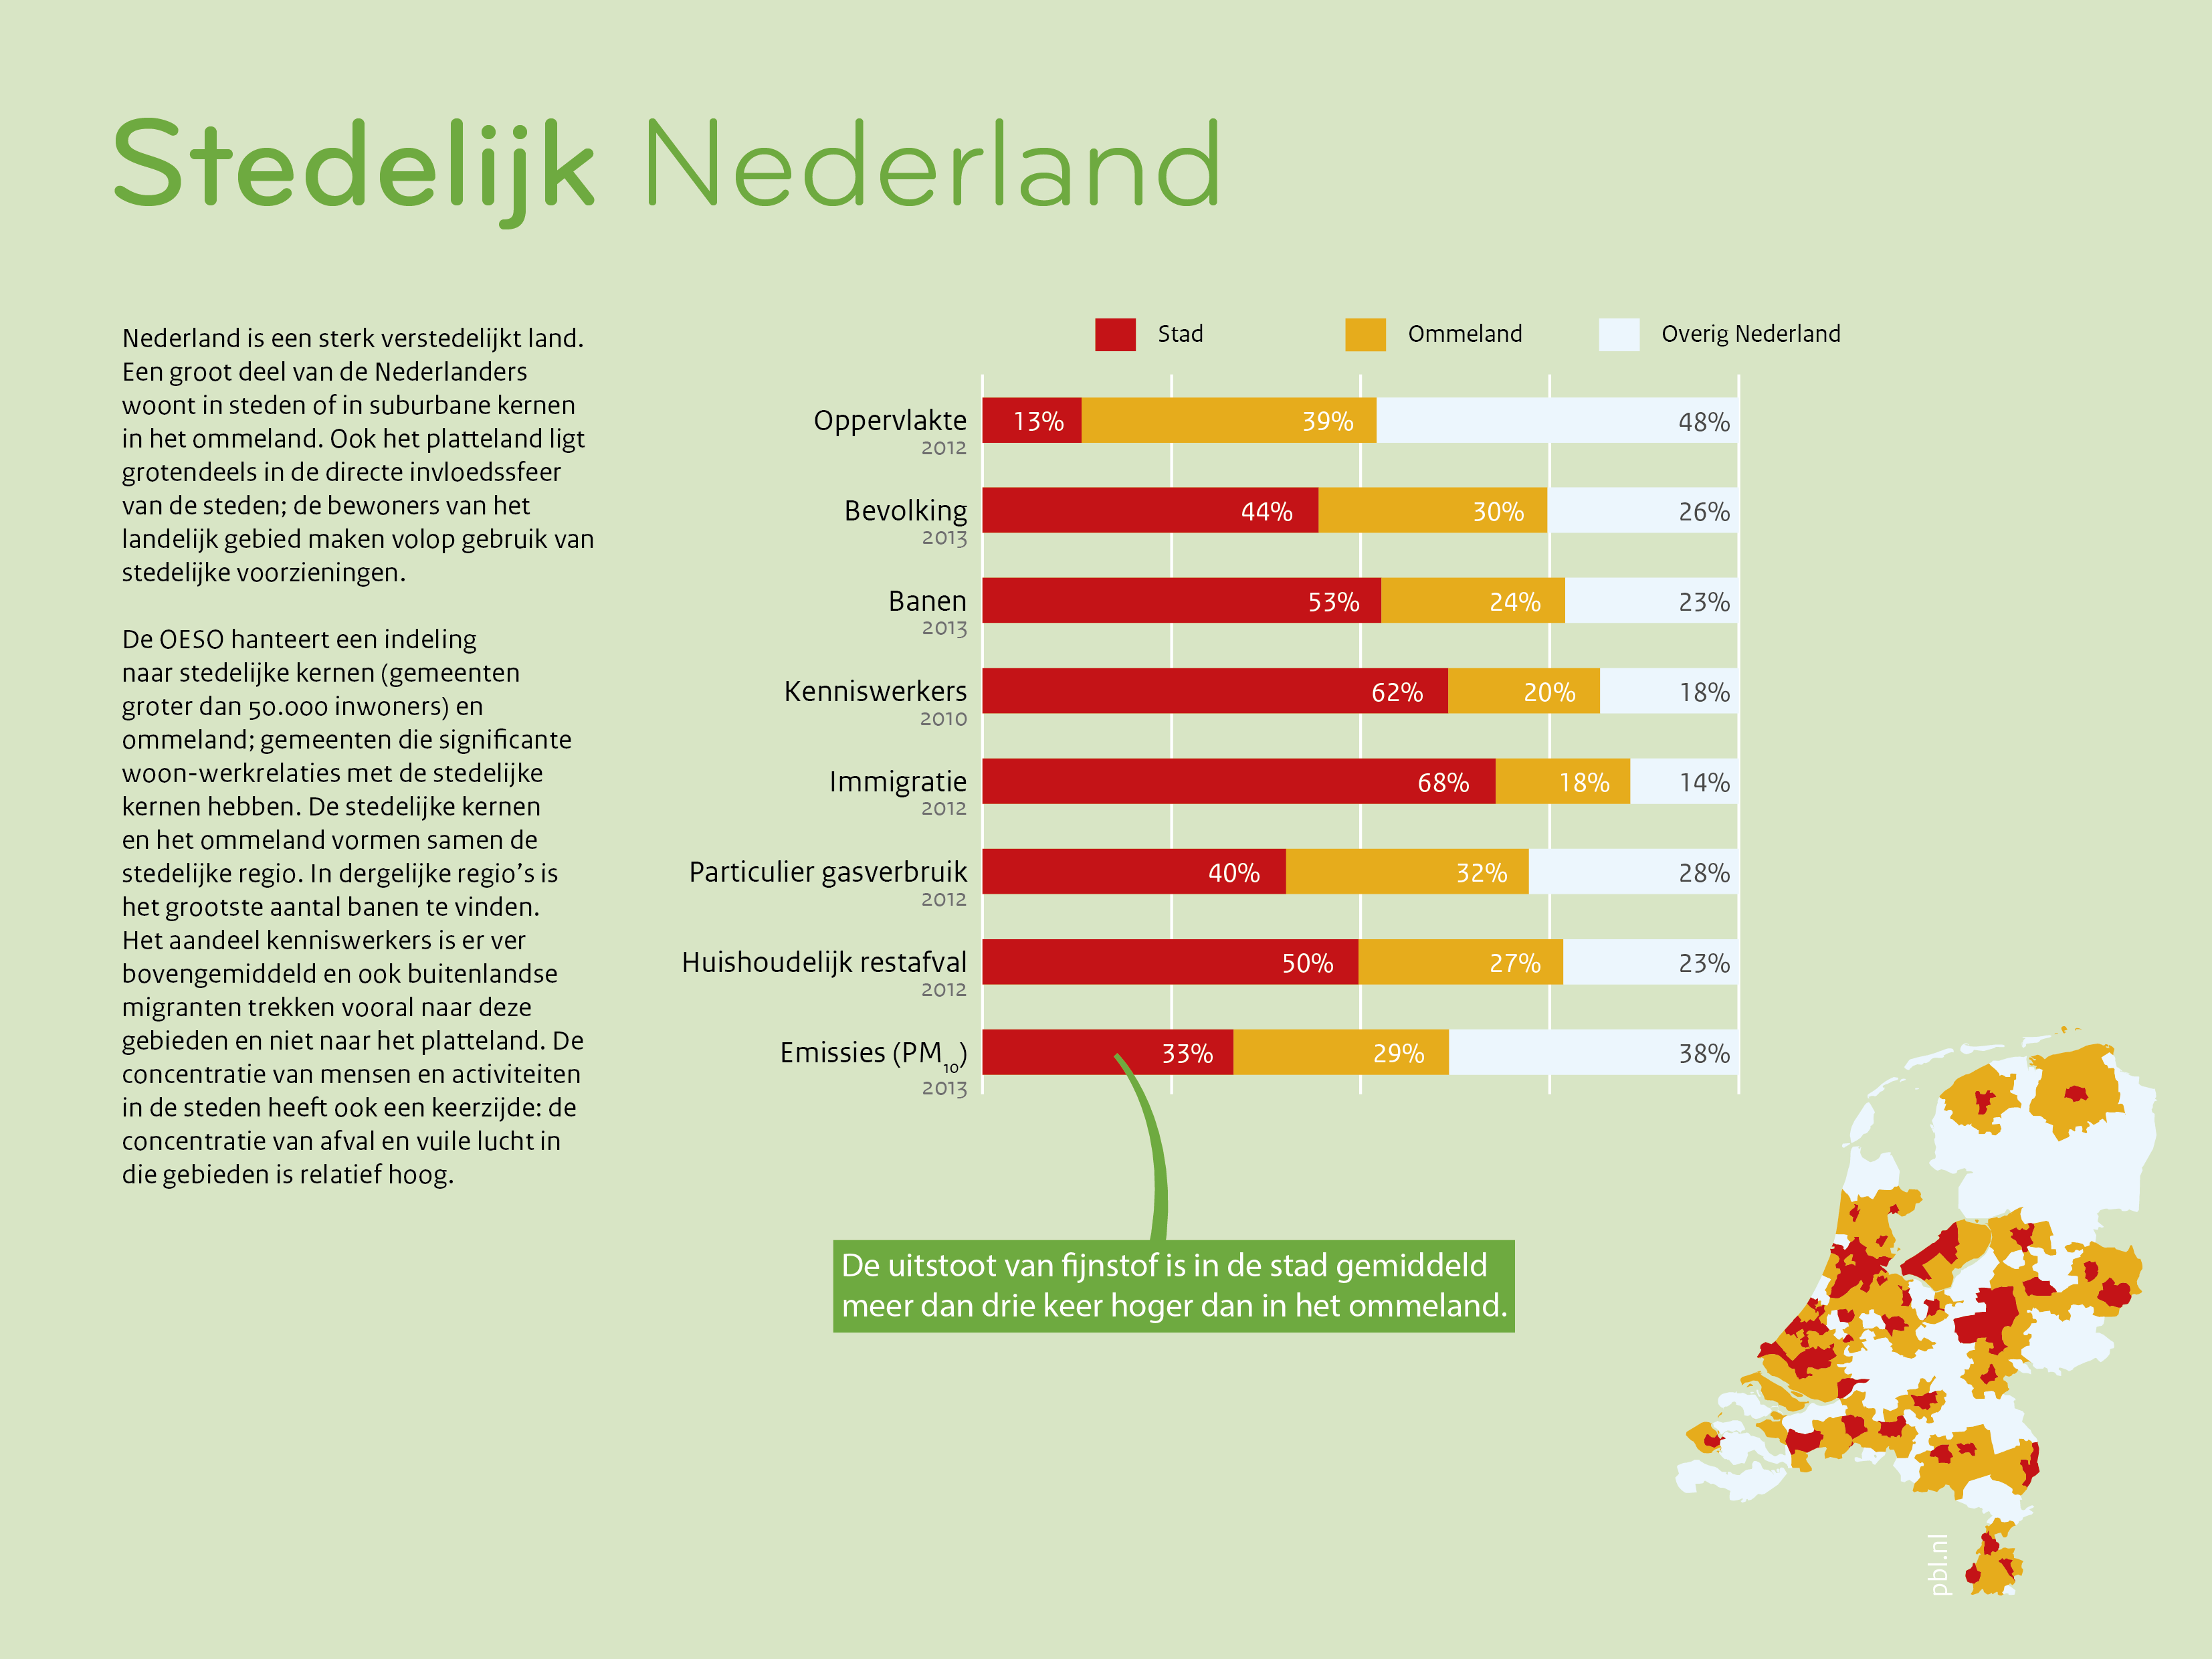 Een groot deel van de Nederlanders woont in steden of in suburbane kernen in het ommeland.